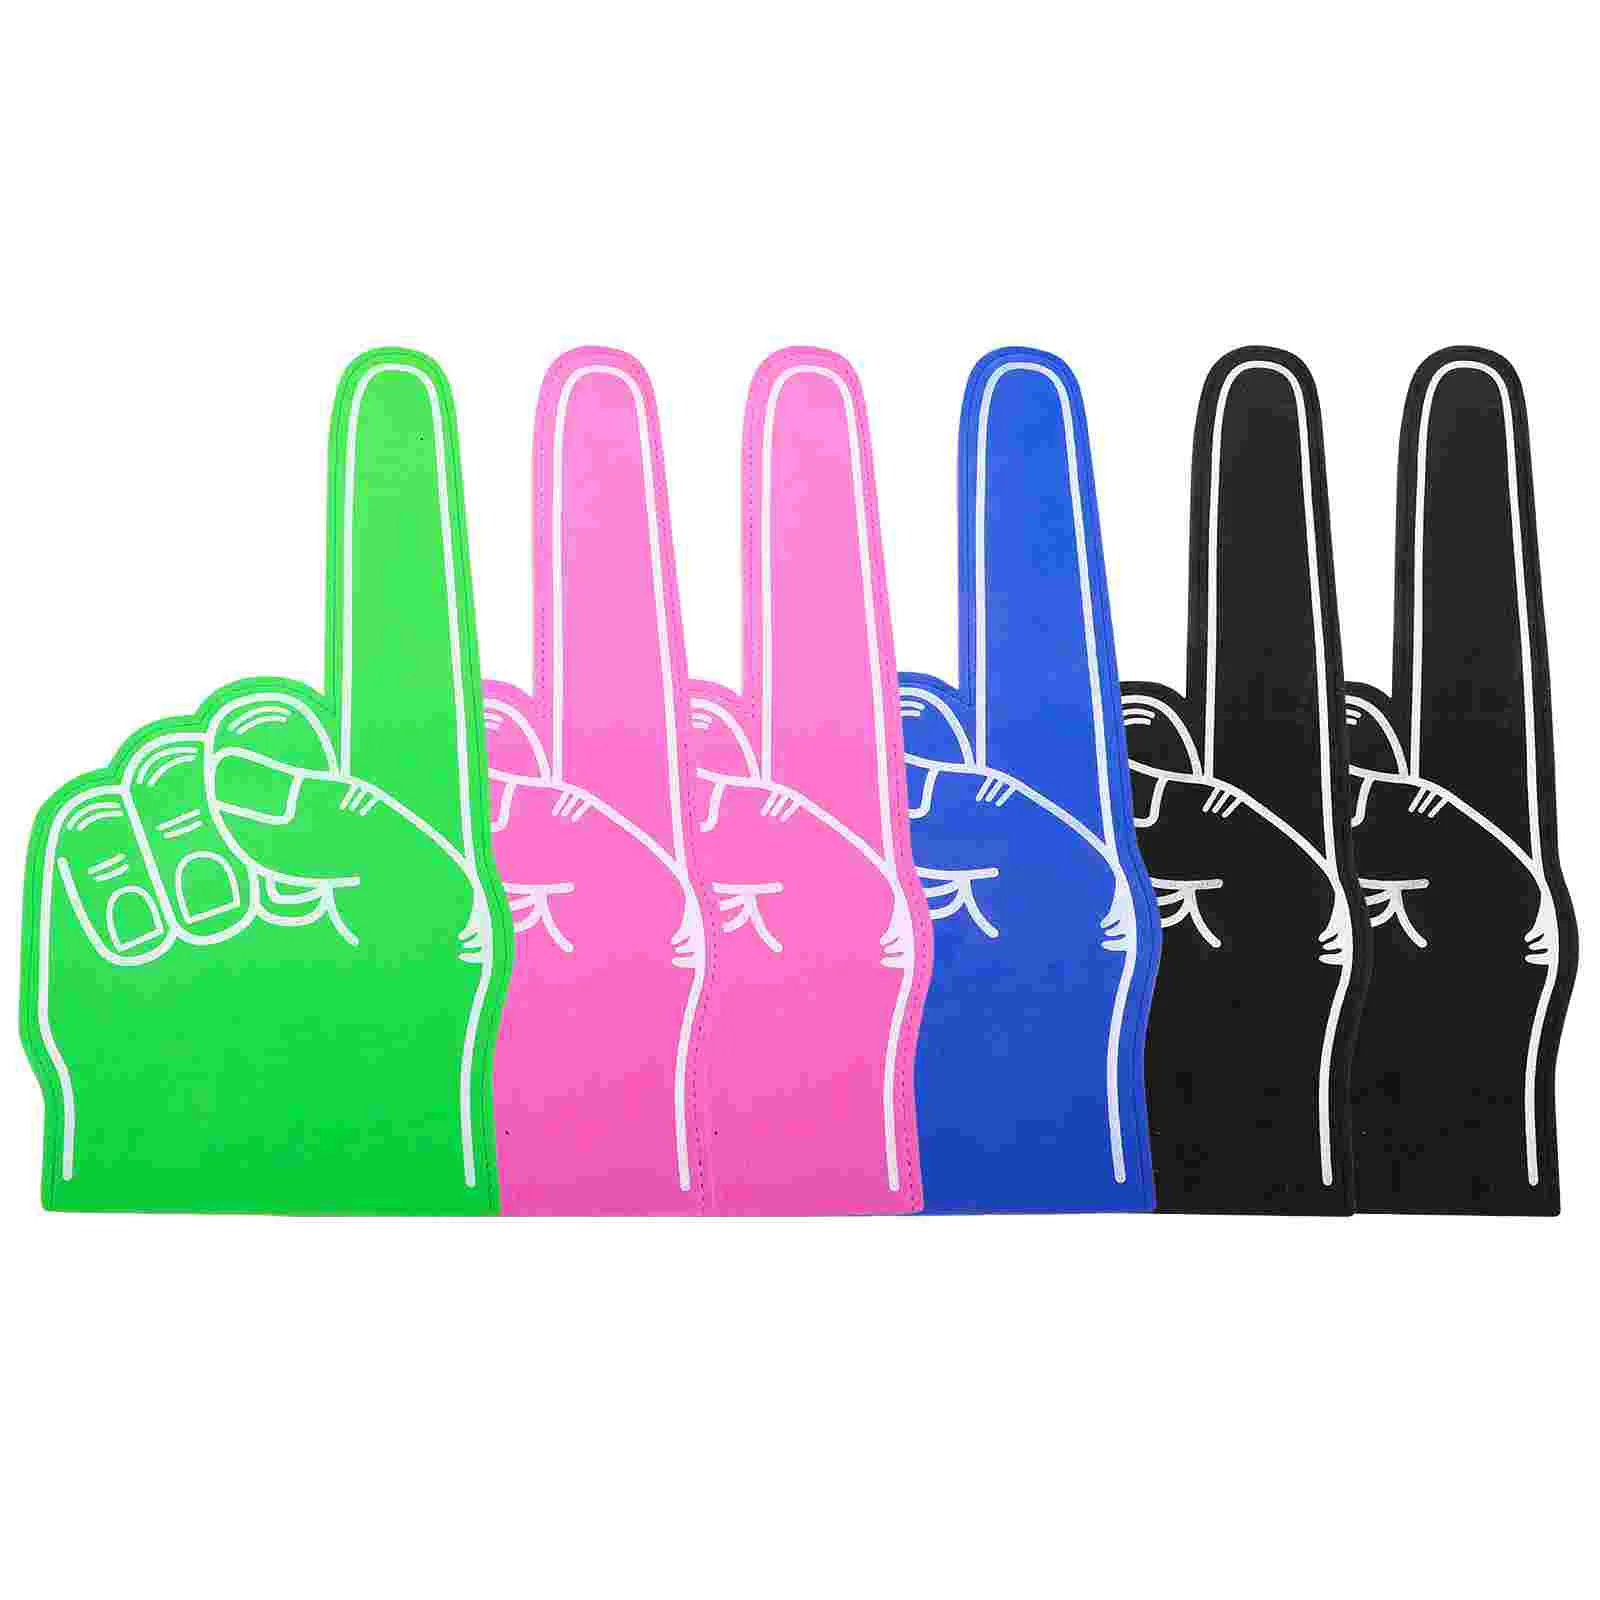 6шт пальцев для рук на все случаи жизни Помпон для черлидинга для спорта Захватывающие цвета Легкая атлетика Местные мероприятия Игры Изображение 3